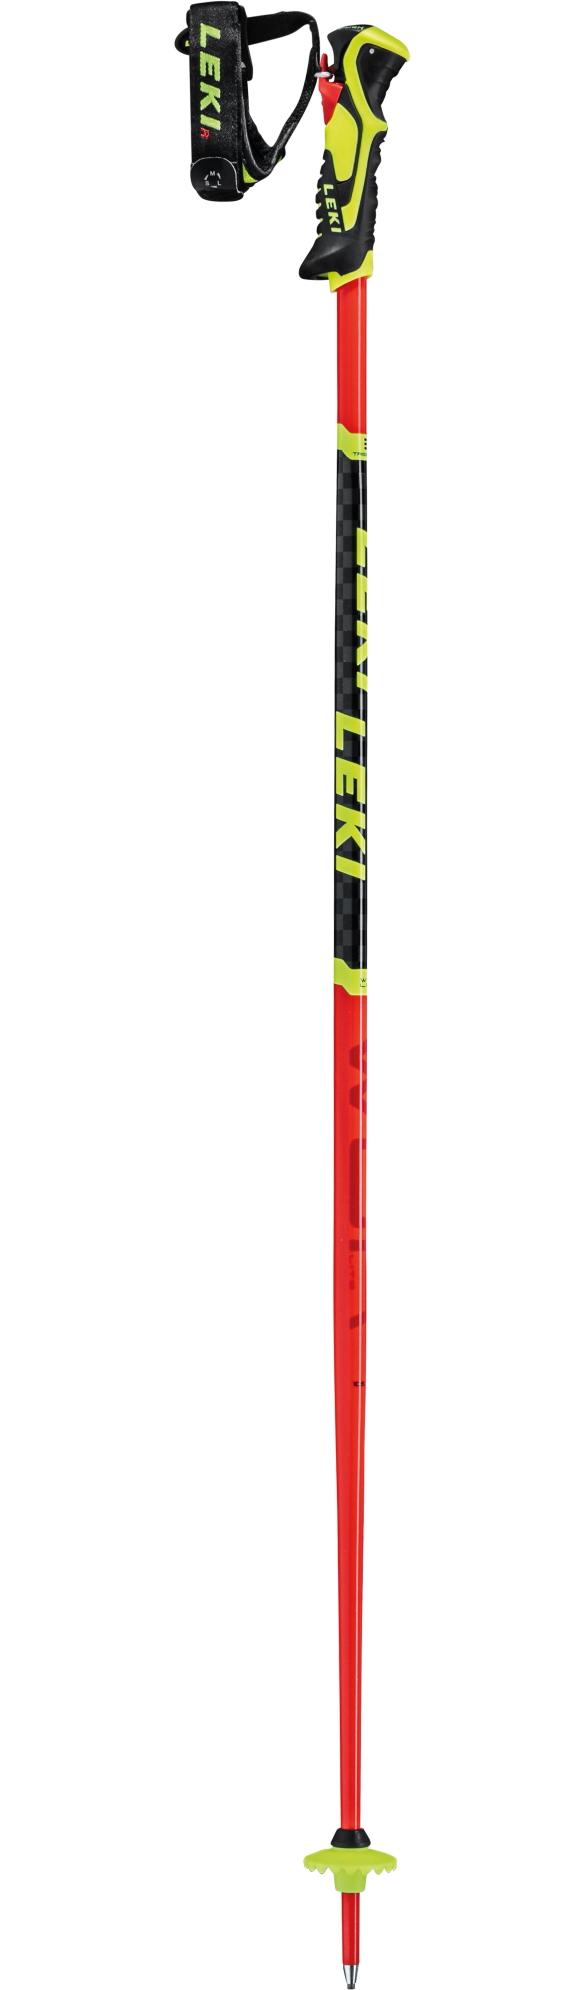 baston esqui Leki Wcr Lite Sl 3D Rojo-negro-Amarillo Neon